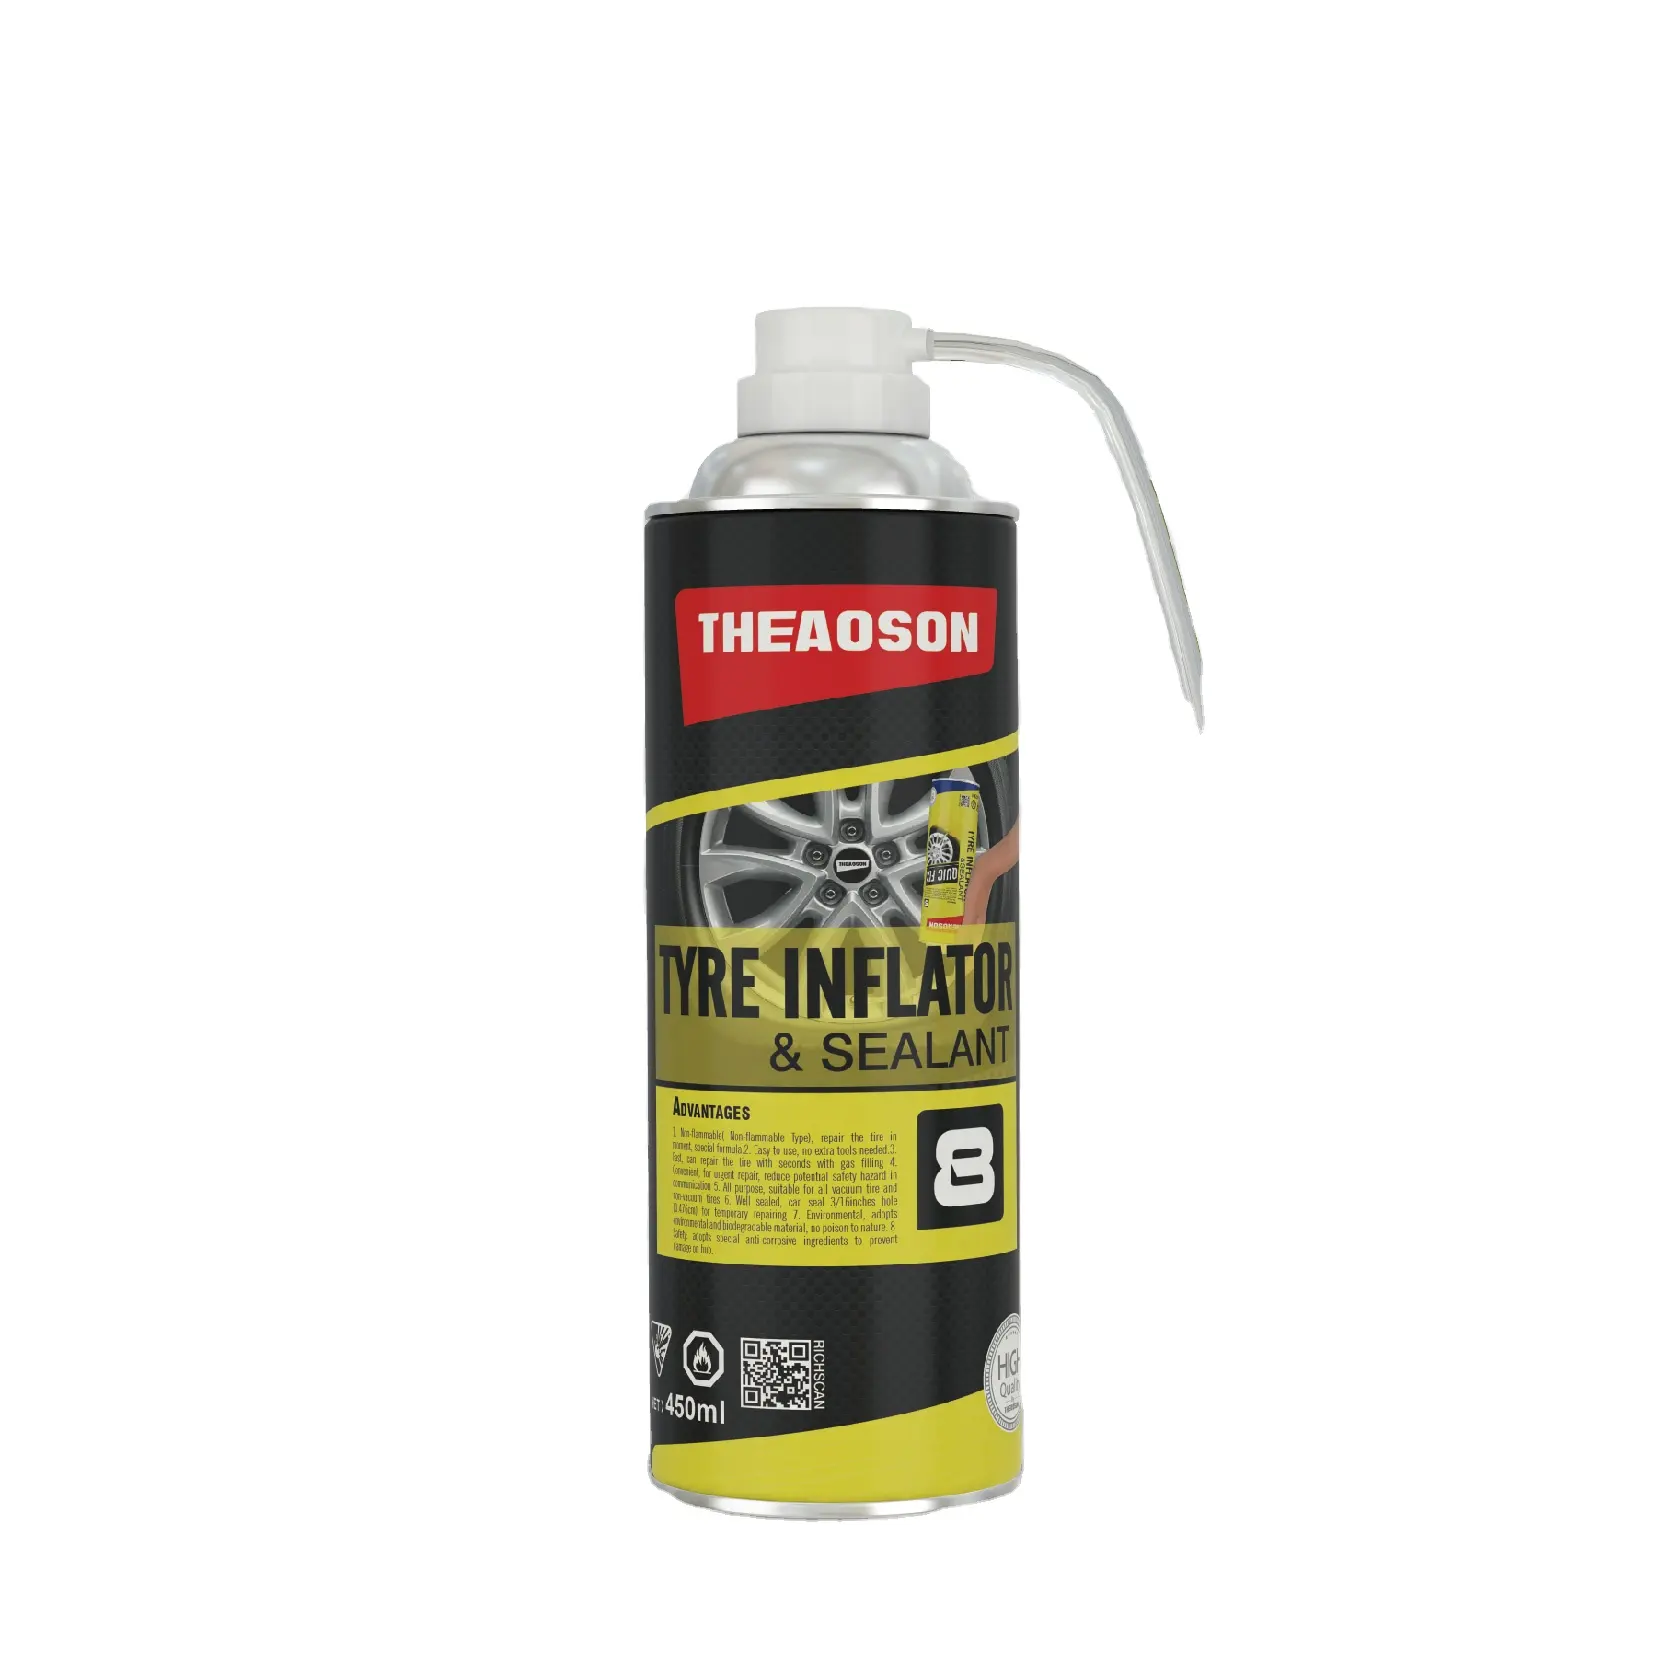 Theaoson Portable Tire Repair Tools Anti Puncture Liquid Tyre Sealant Inflator with Tire Repair Liquid